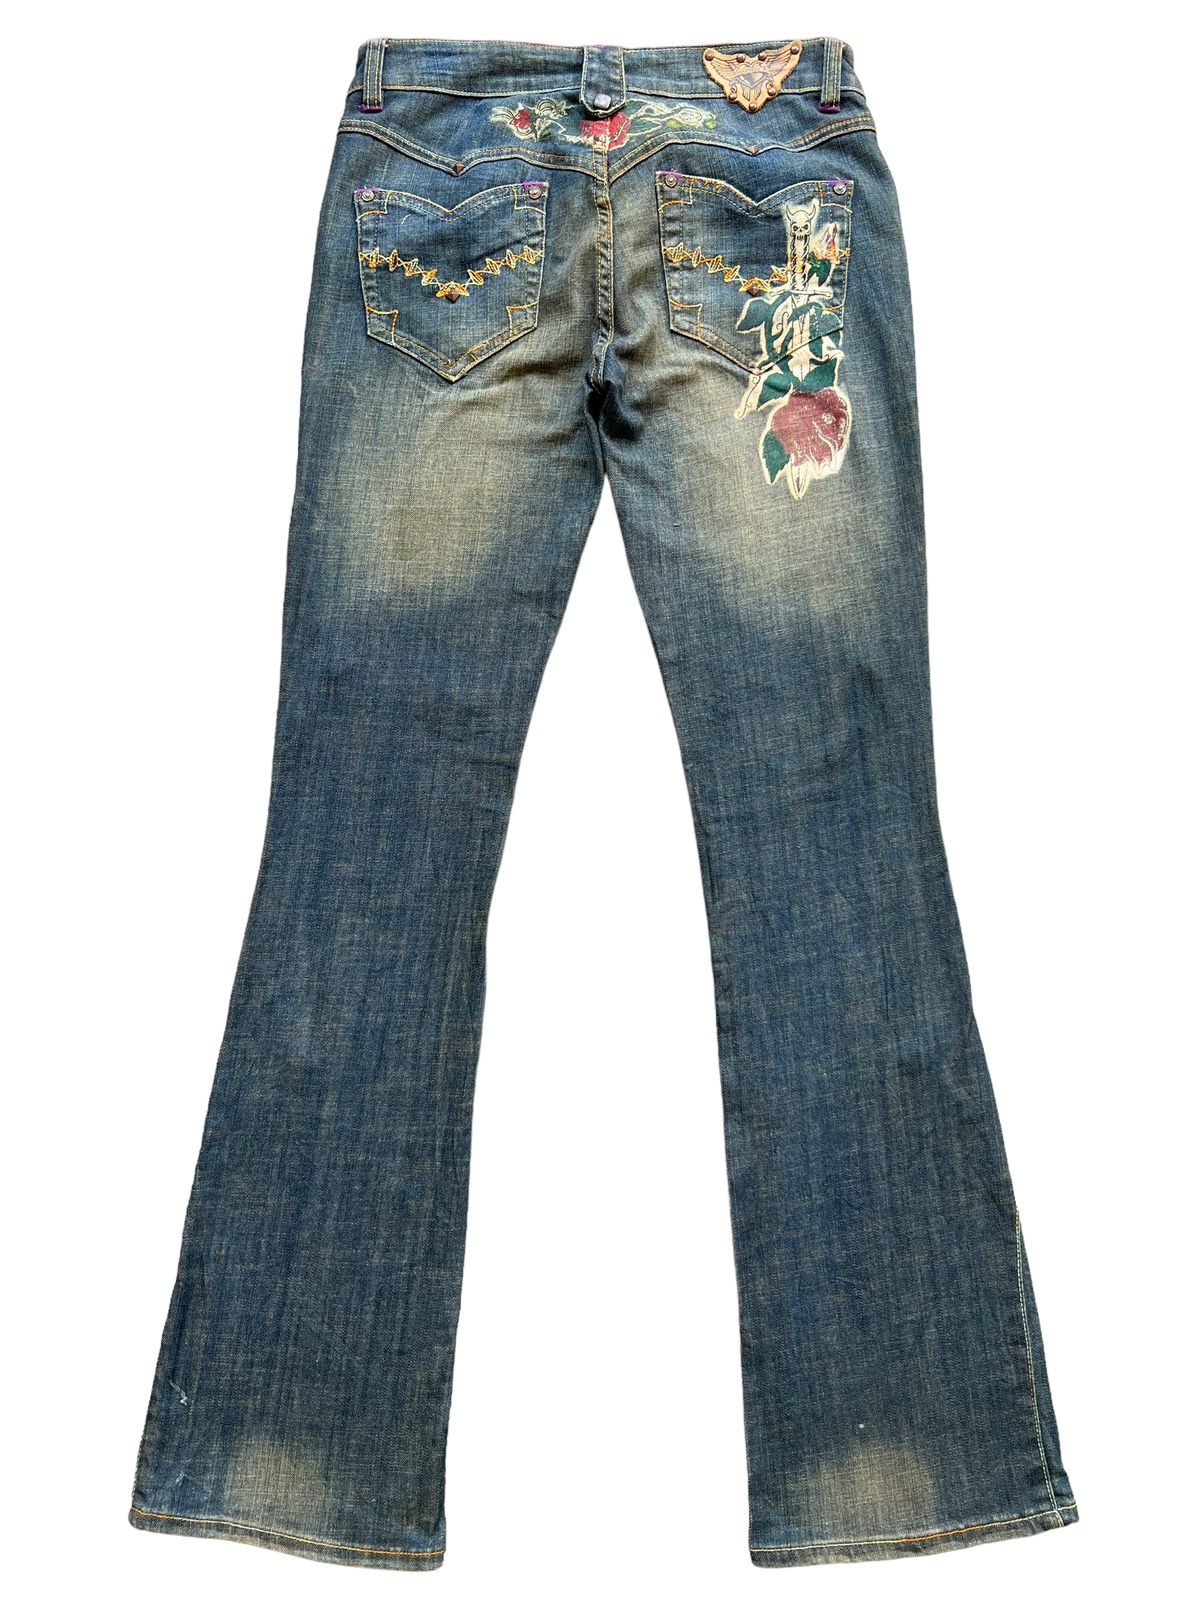 Archival Clothing - Vintage Gotchic Bones Mudwash Punk Flare Denim Jeans 28x33 - 3